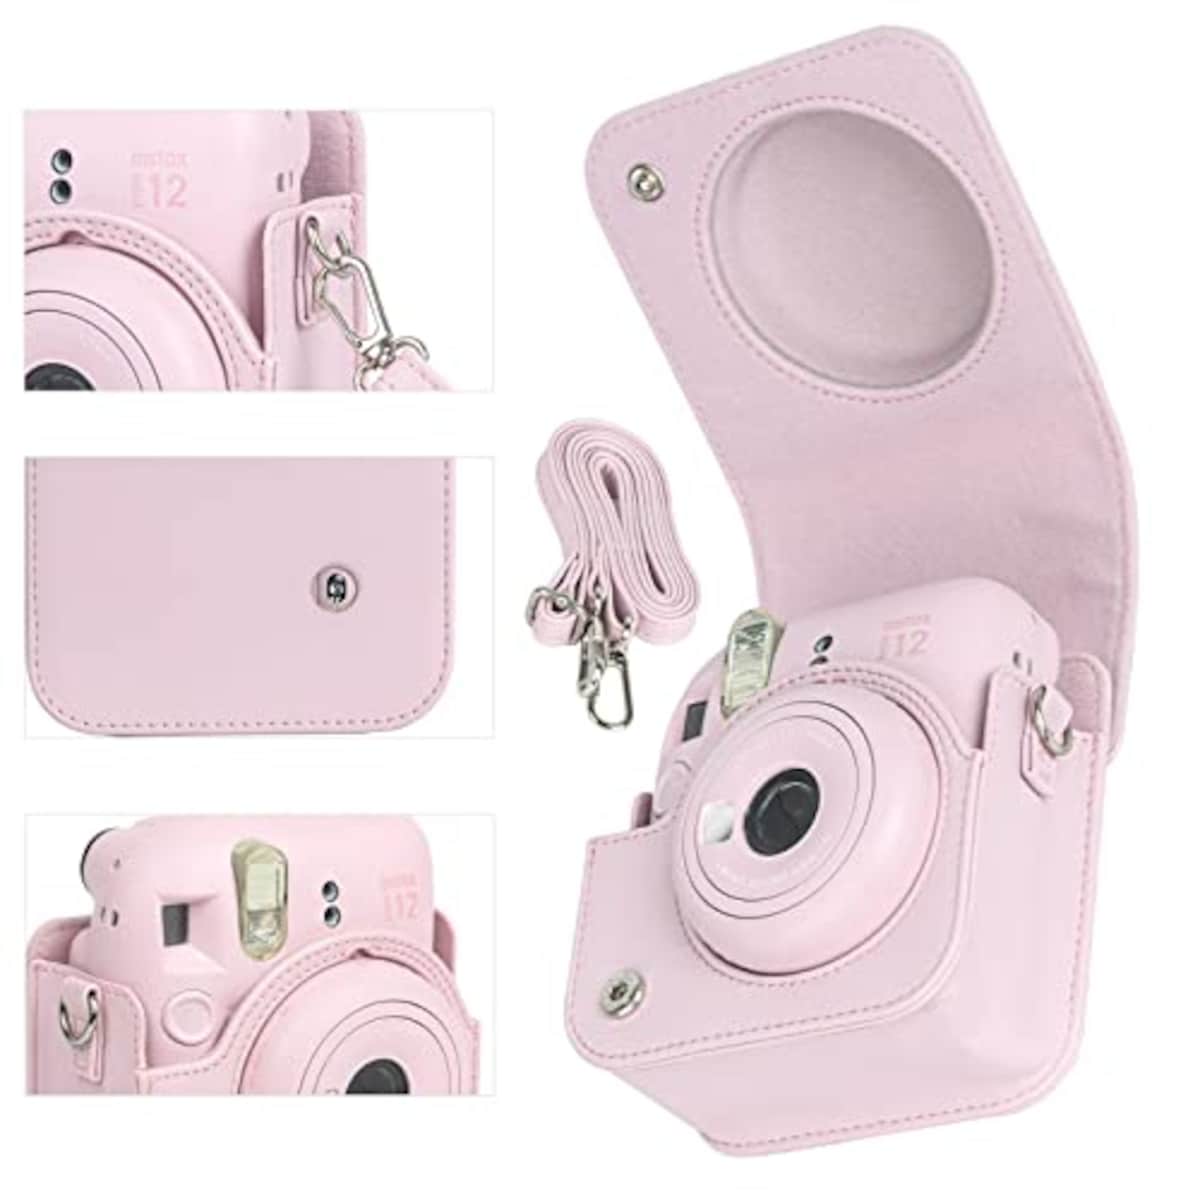  チェキケース instax mini 12用 カメラケース mini12 チェキ カバー Fujifilm チェキ ケース 新モデル 全面保護 傷つけ防止 携帯便利 ショルダーストラップ付き PUレザー (ピンク)画像2 